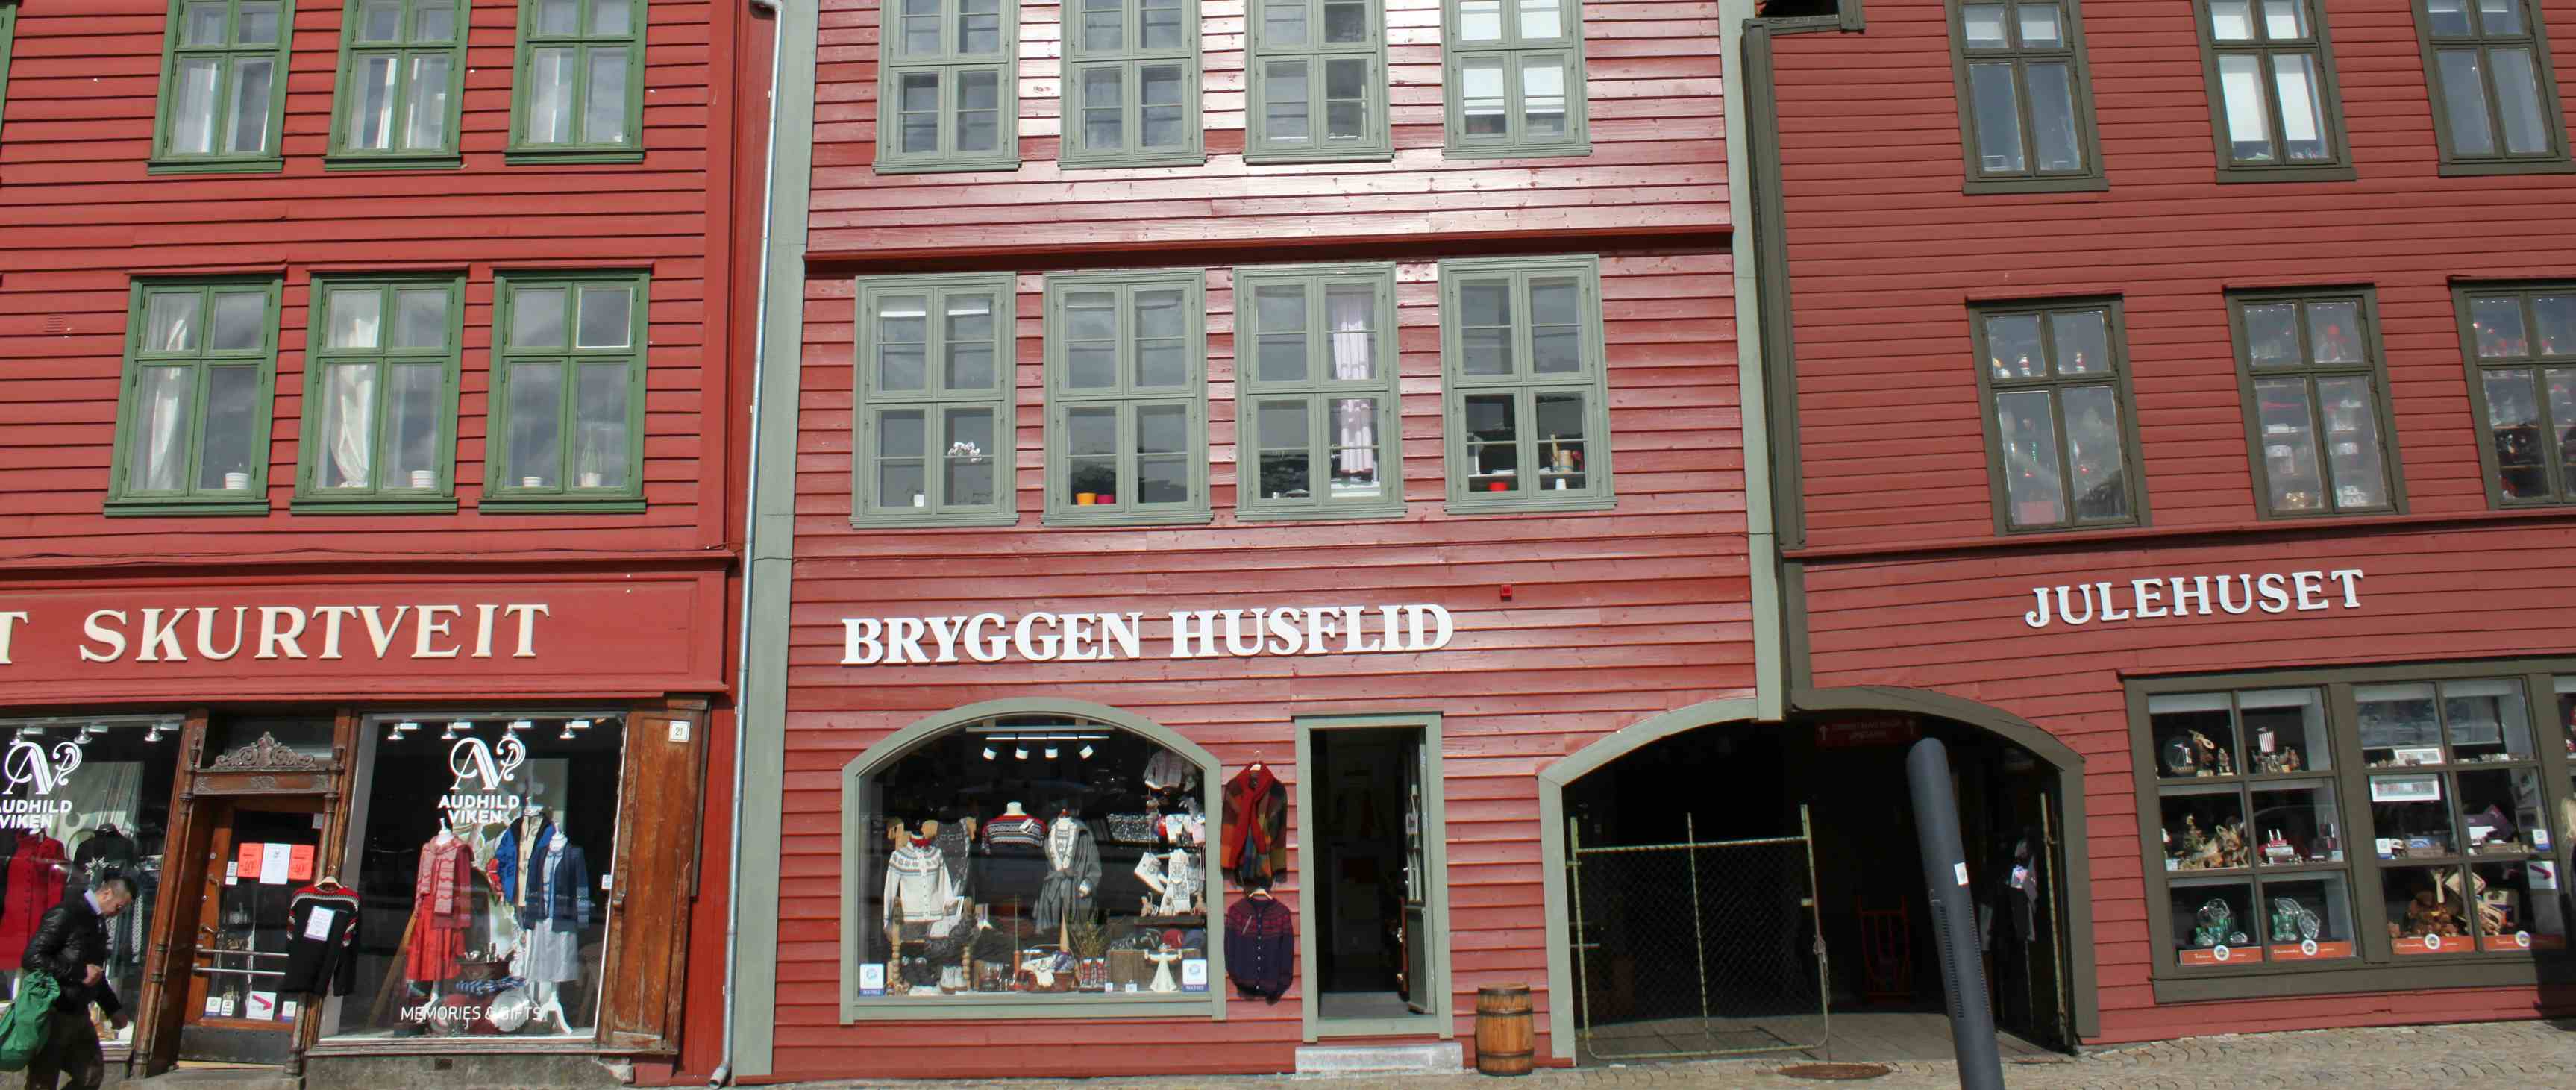 Bryggen Husflid A/S